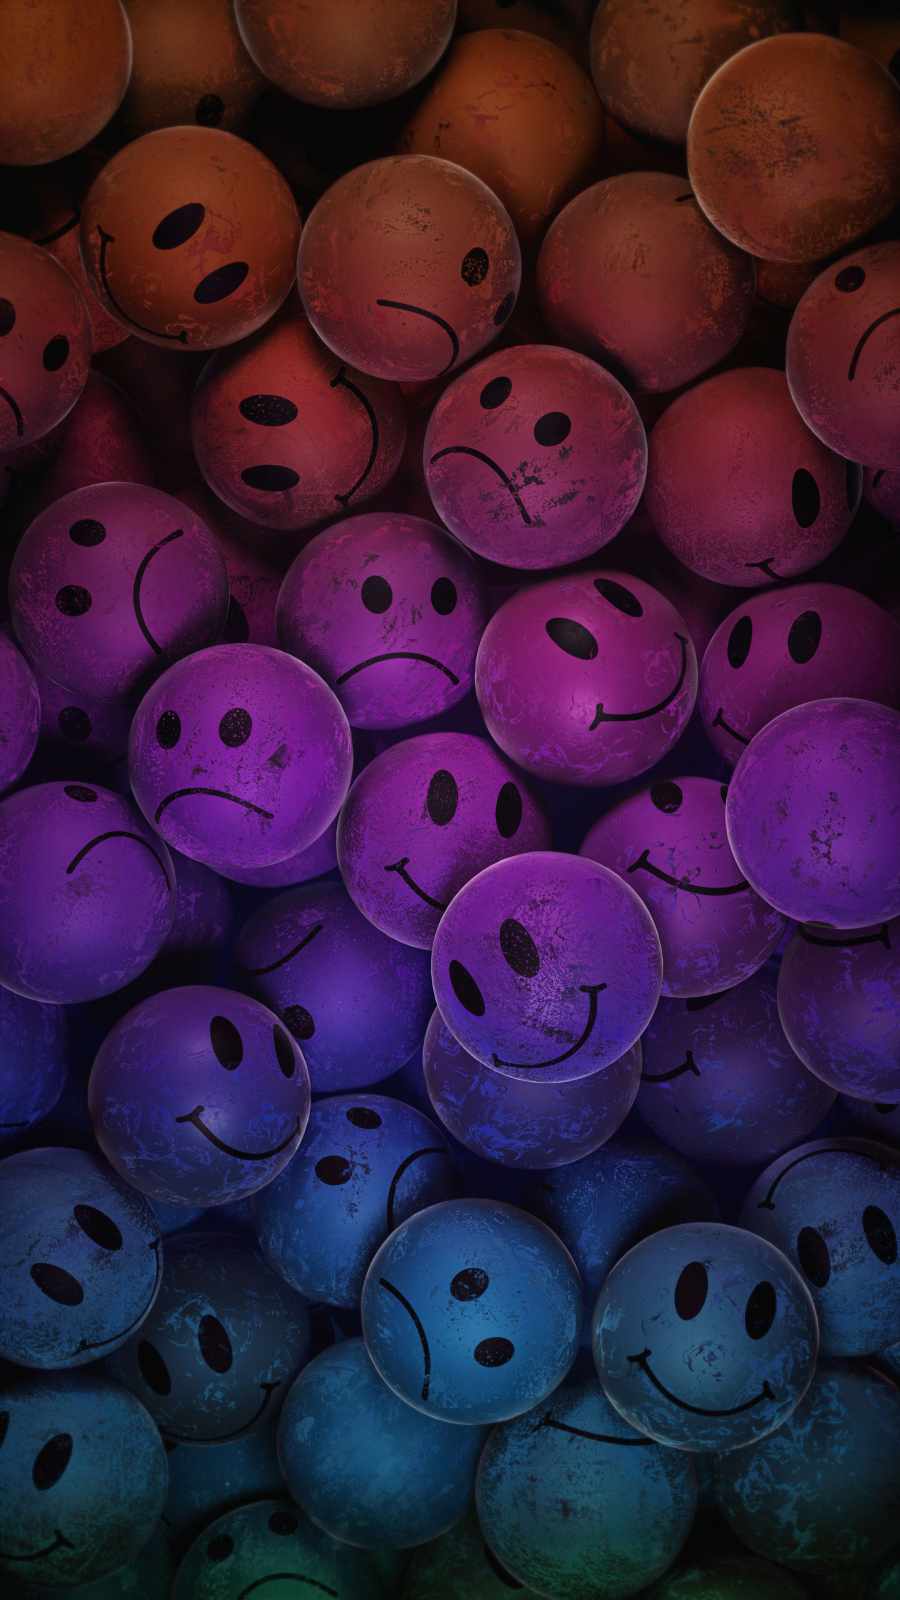 Happy Sad Faces